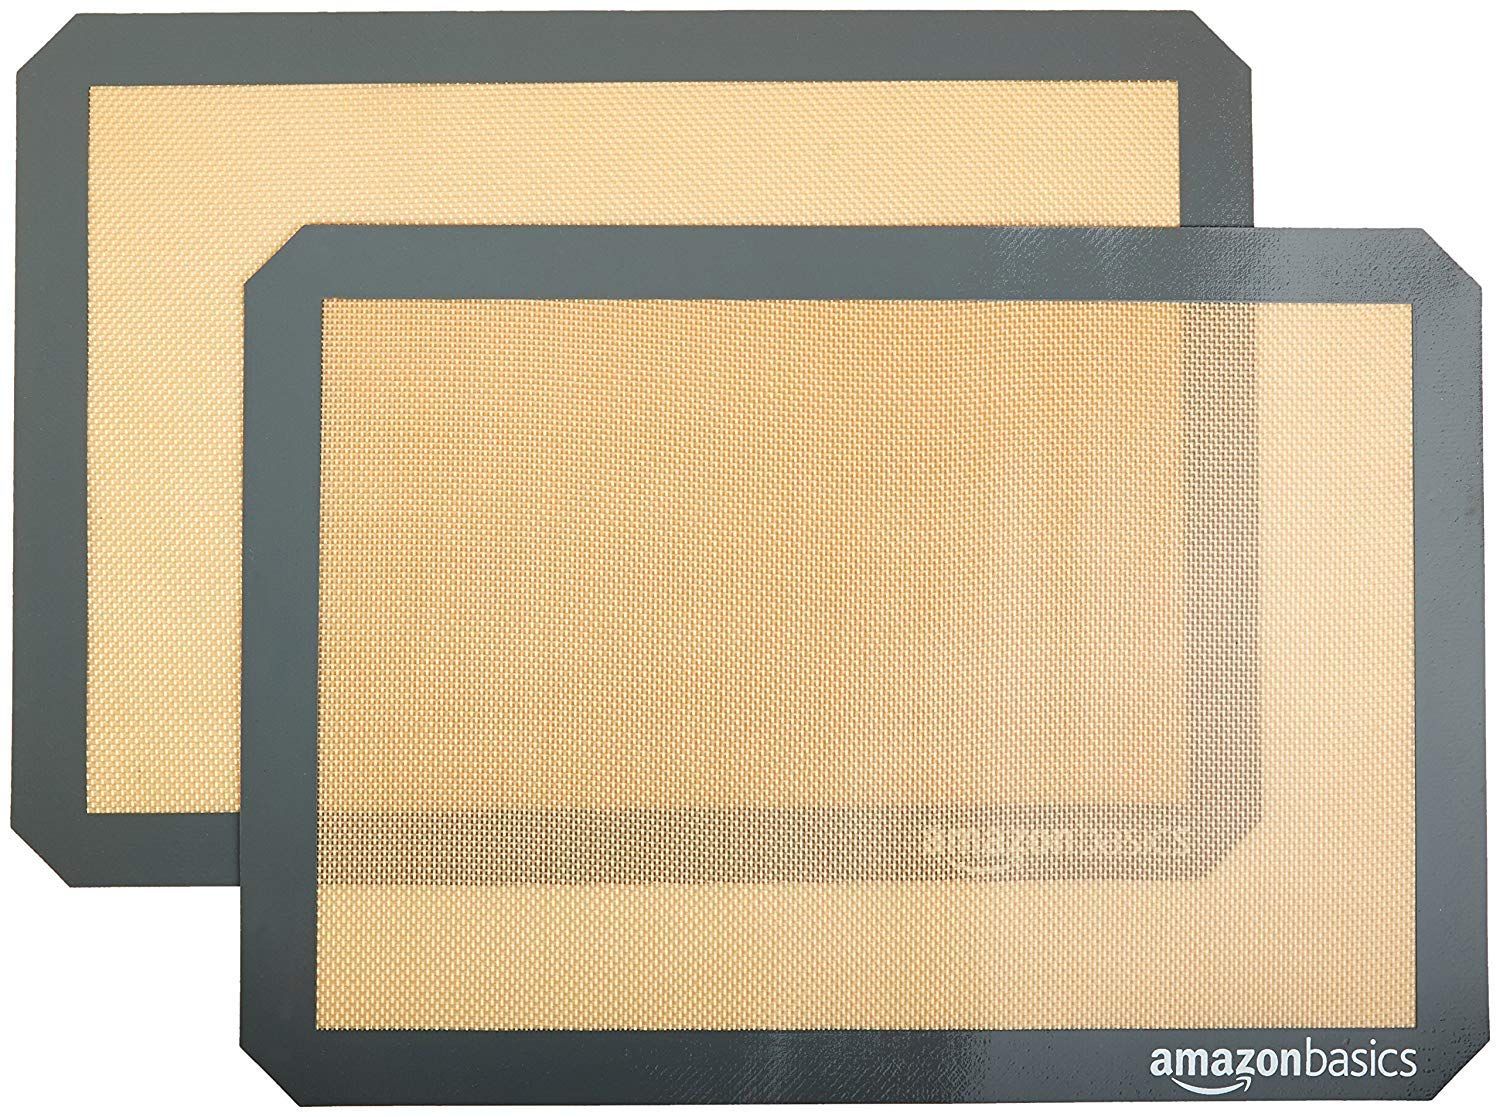 Amazon Basics Silicone, Non-Stick, Food Safe Baking Mat, Pack of 2, New Beige/Gray, Rectangular, ... | Amazon (US)